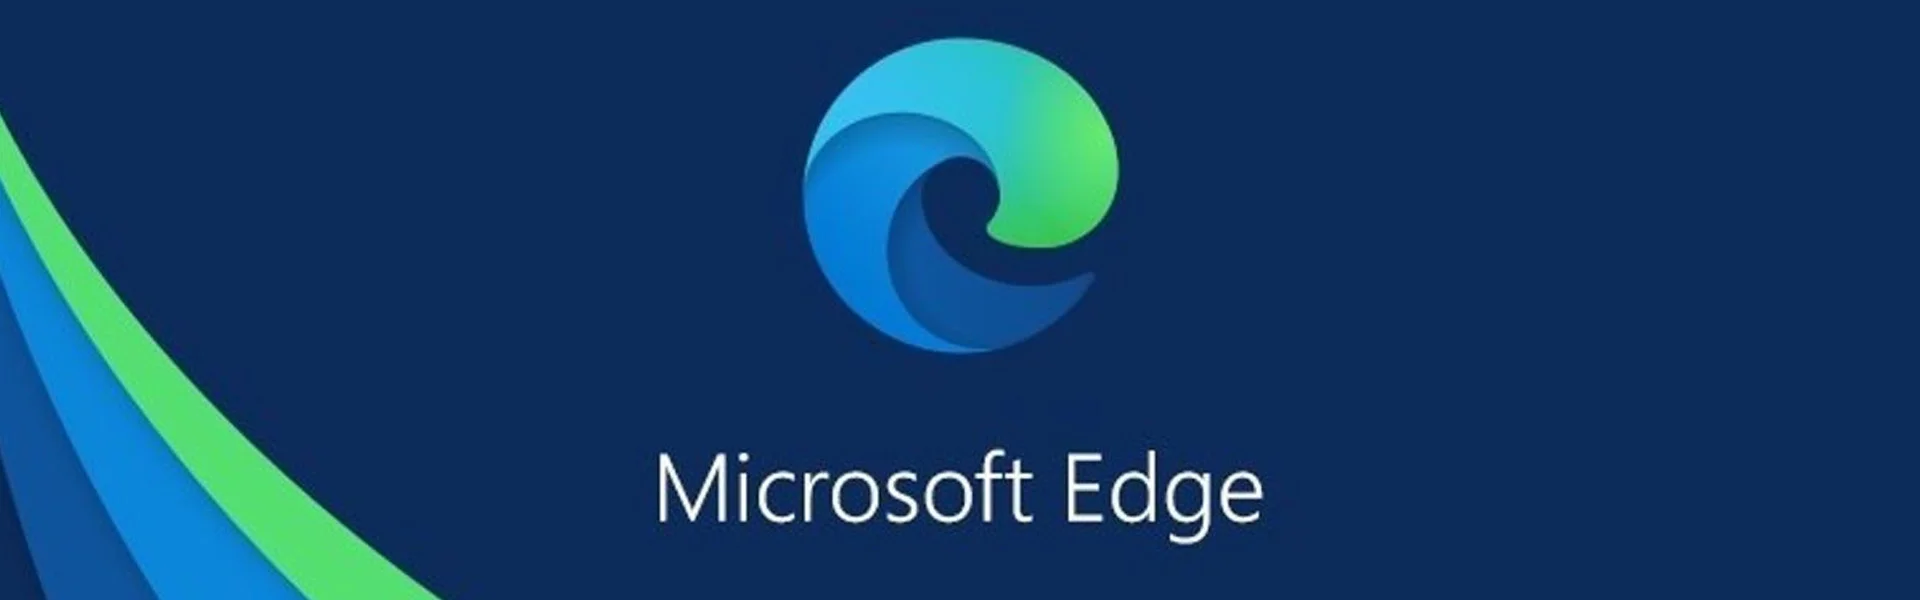 Logo Microsoft Edge - Cómo instalar el certificado digital en Edge - CertificadoElectronico.es